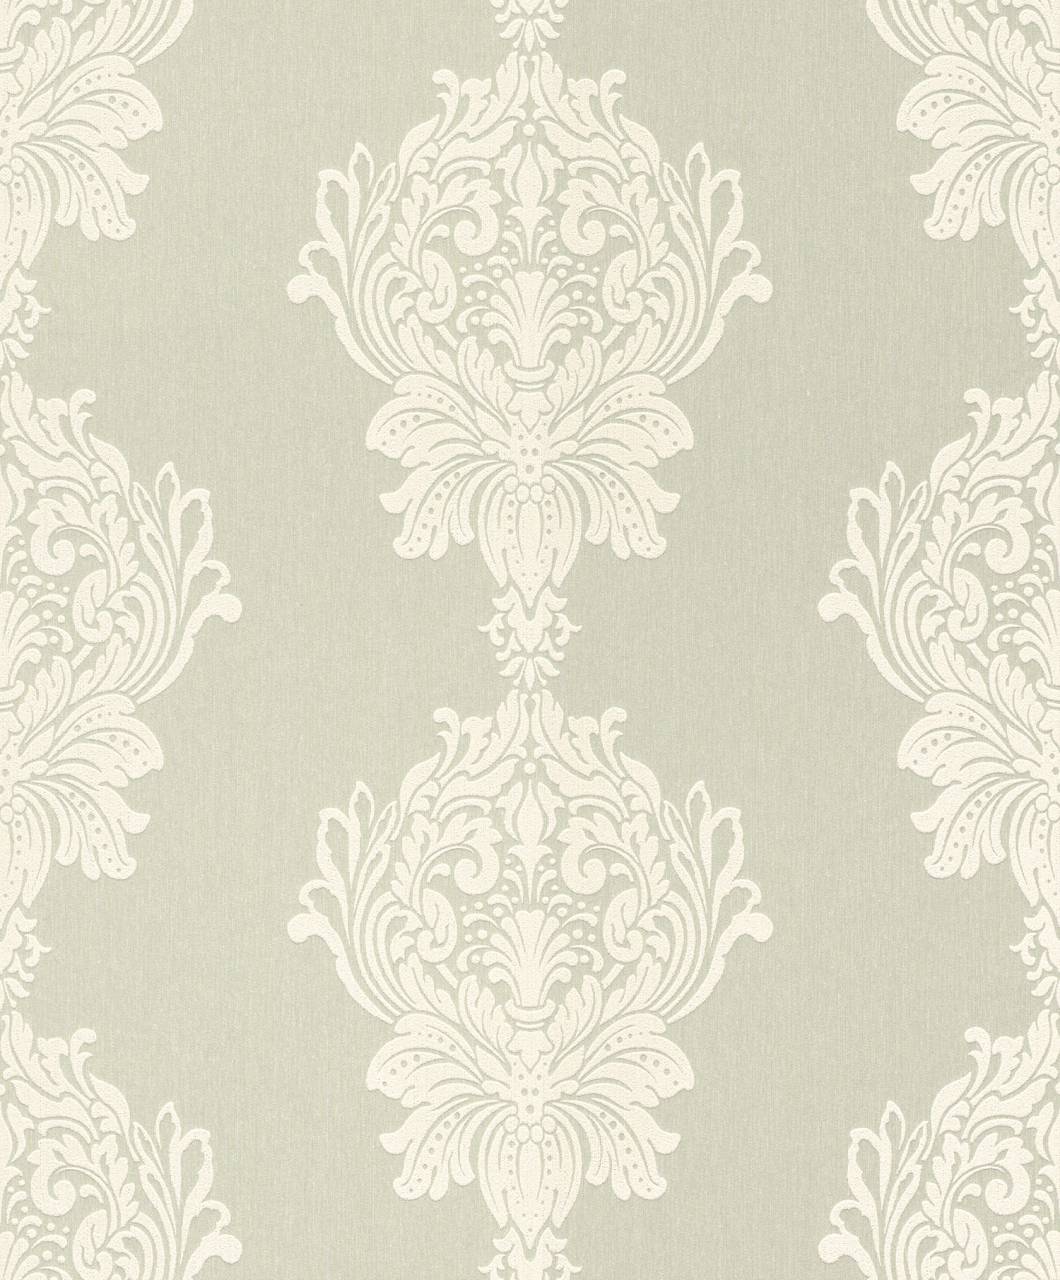 Rasch Textil Non-Woven Wallpaper - Cador 086781 / 08678-1